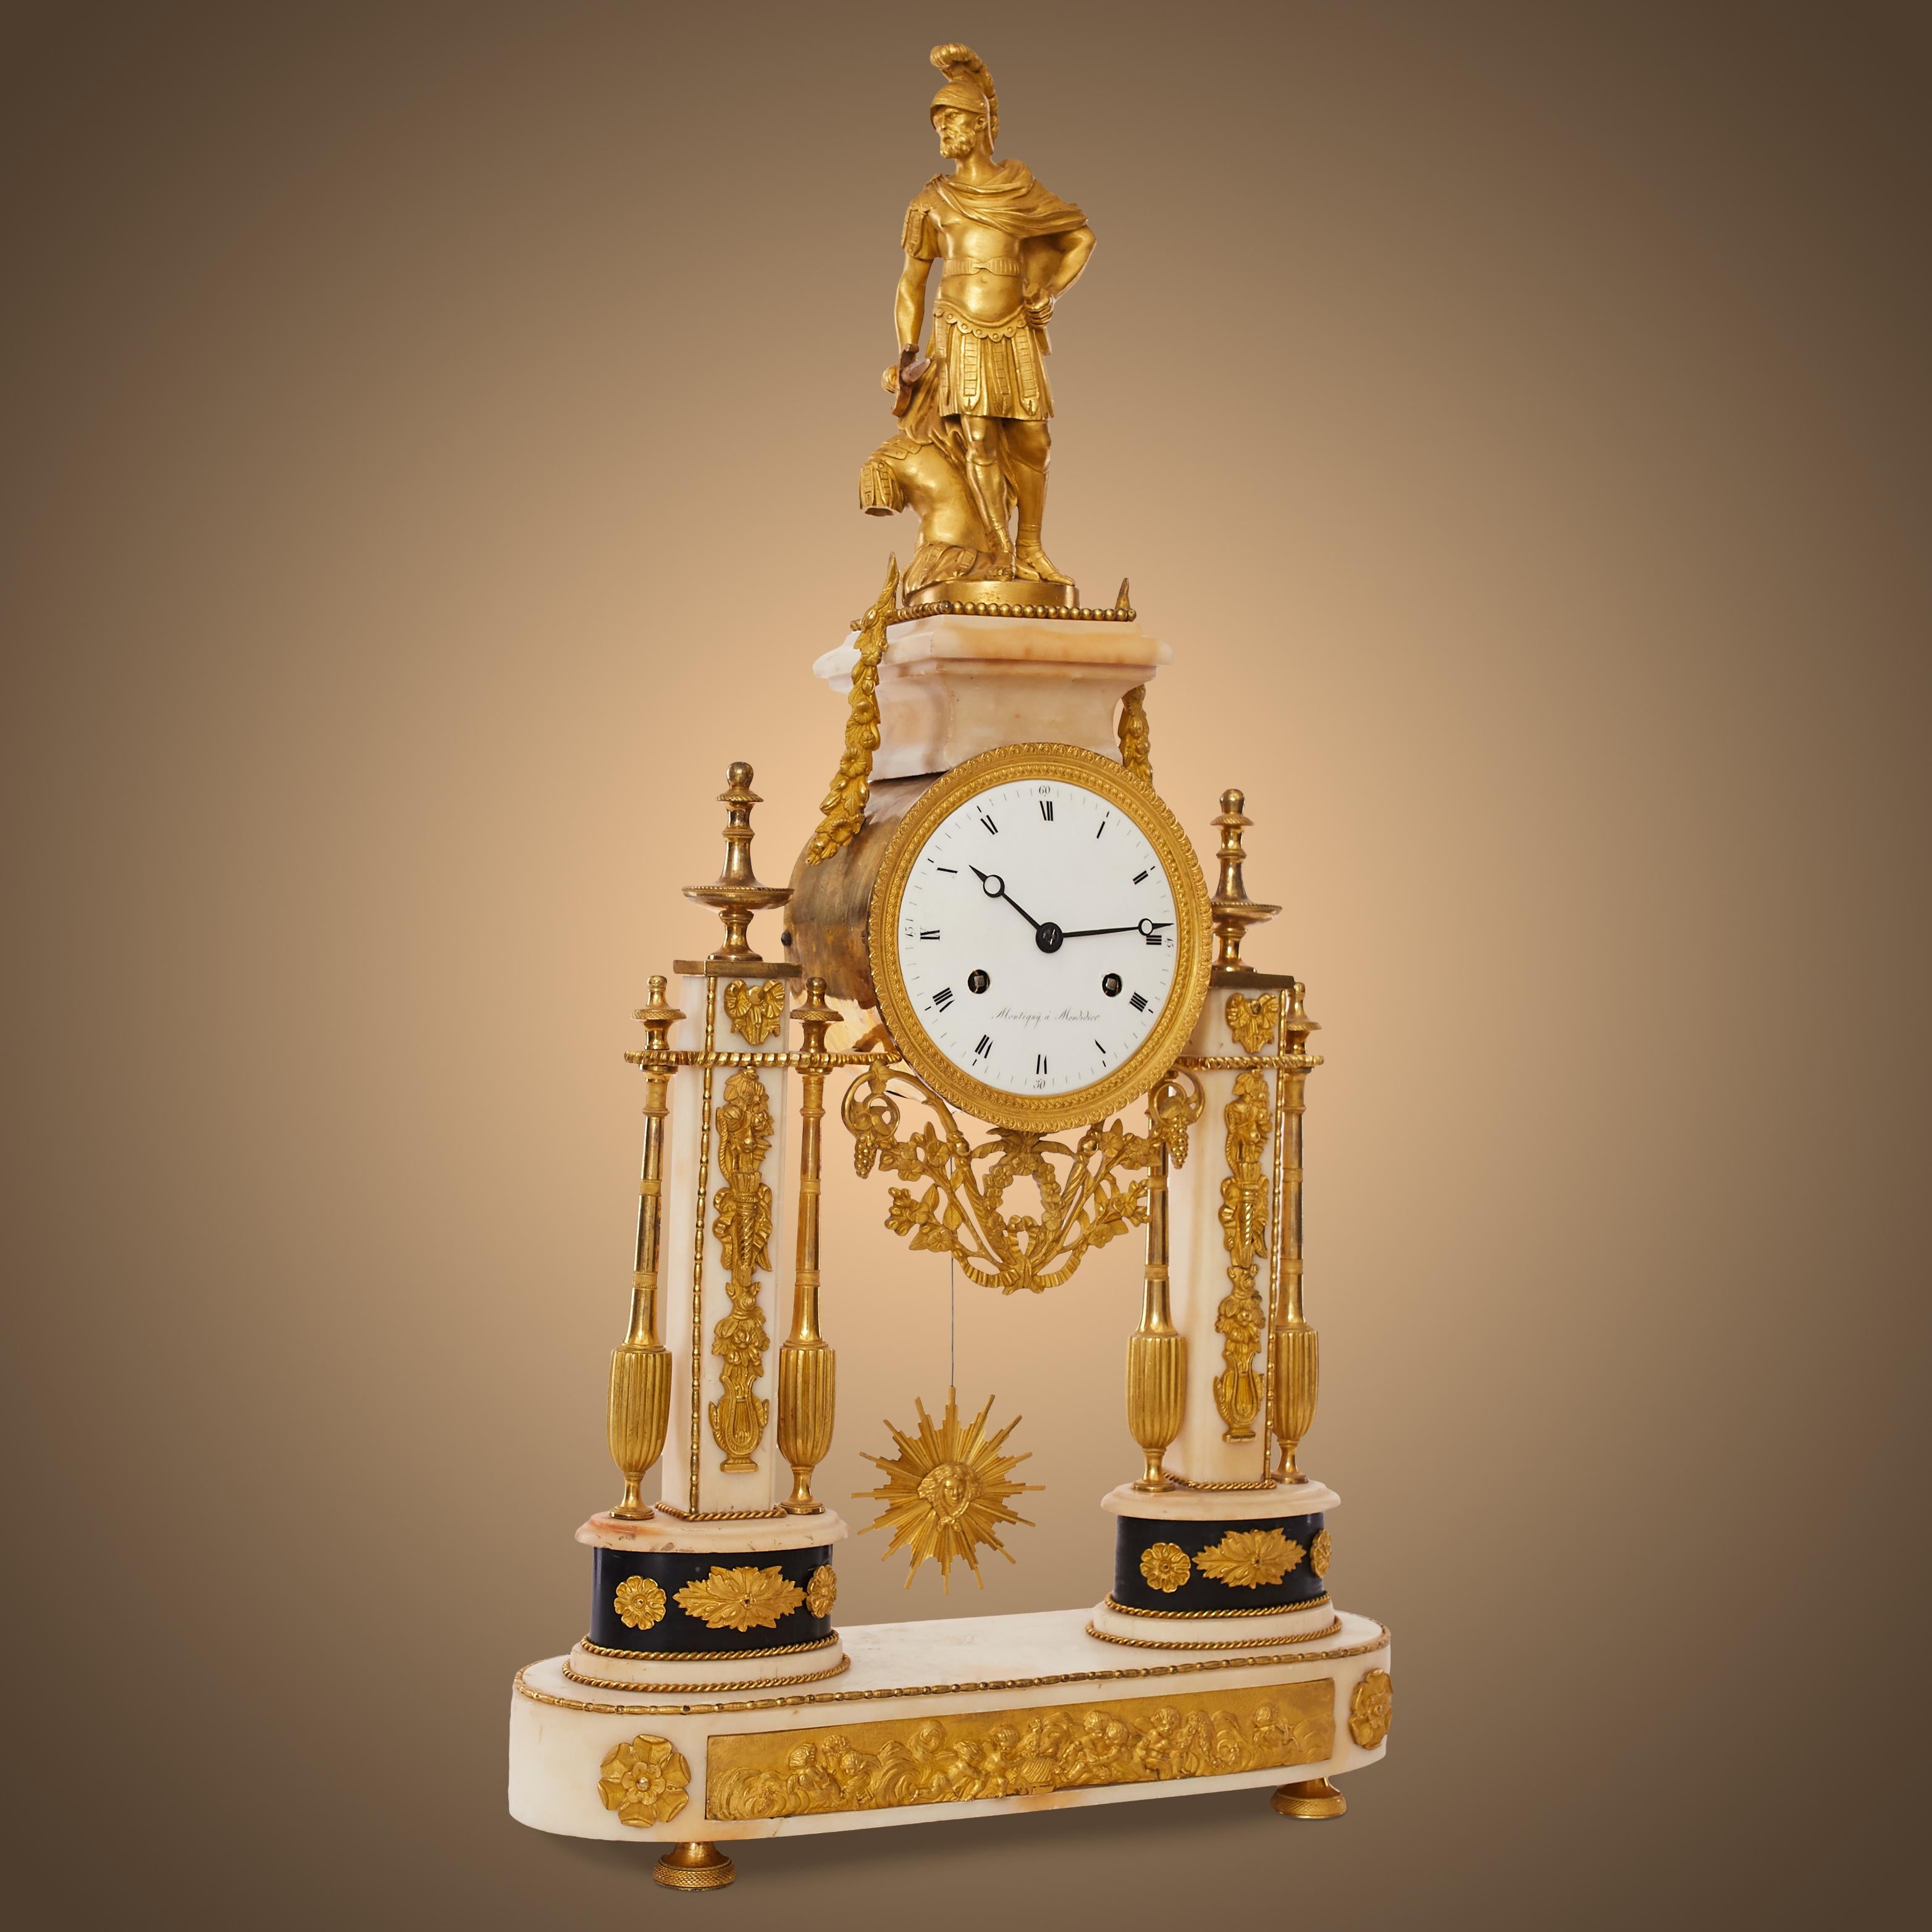 Horloge portique Louis XVI
Pendule appelée 